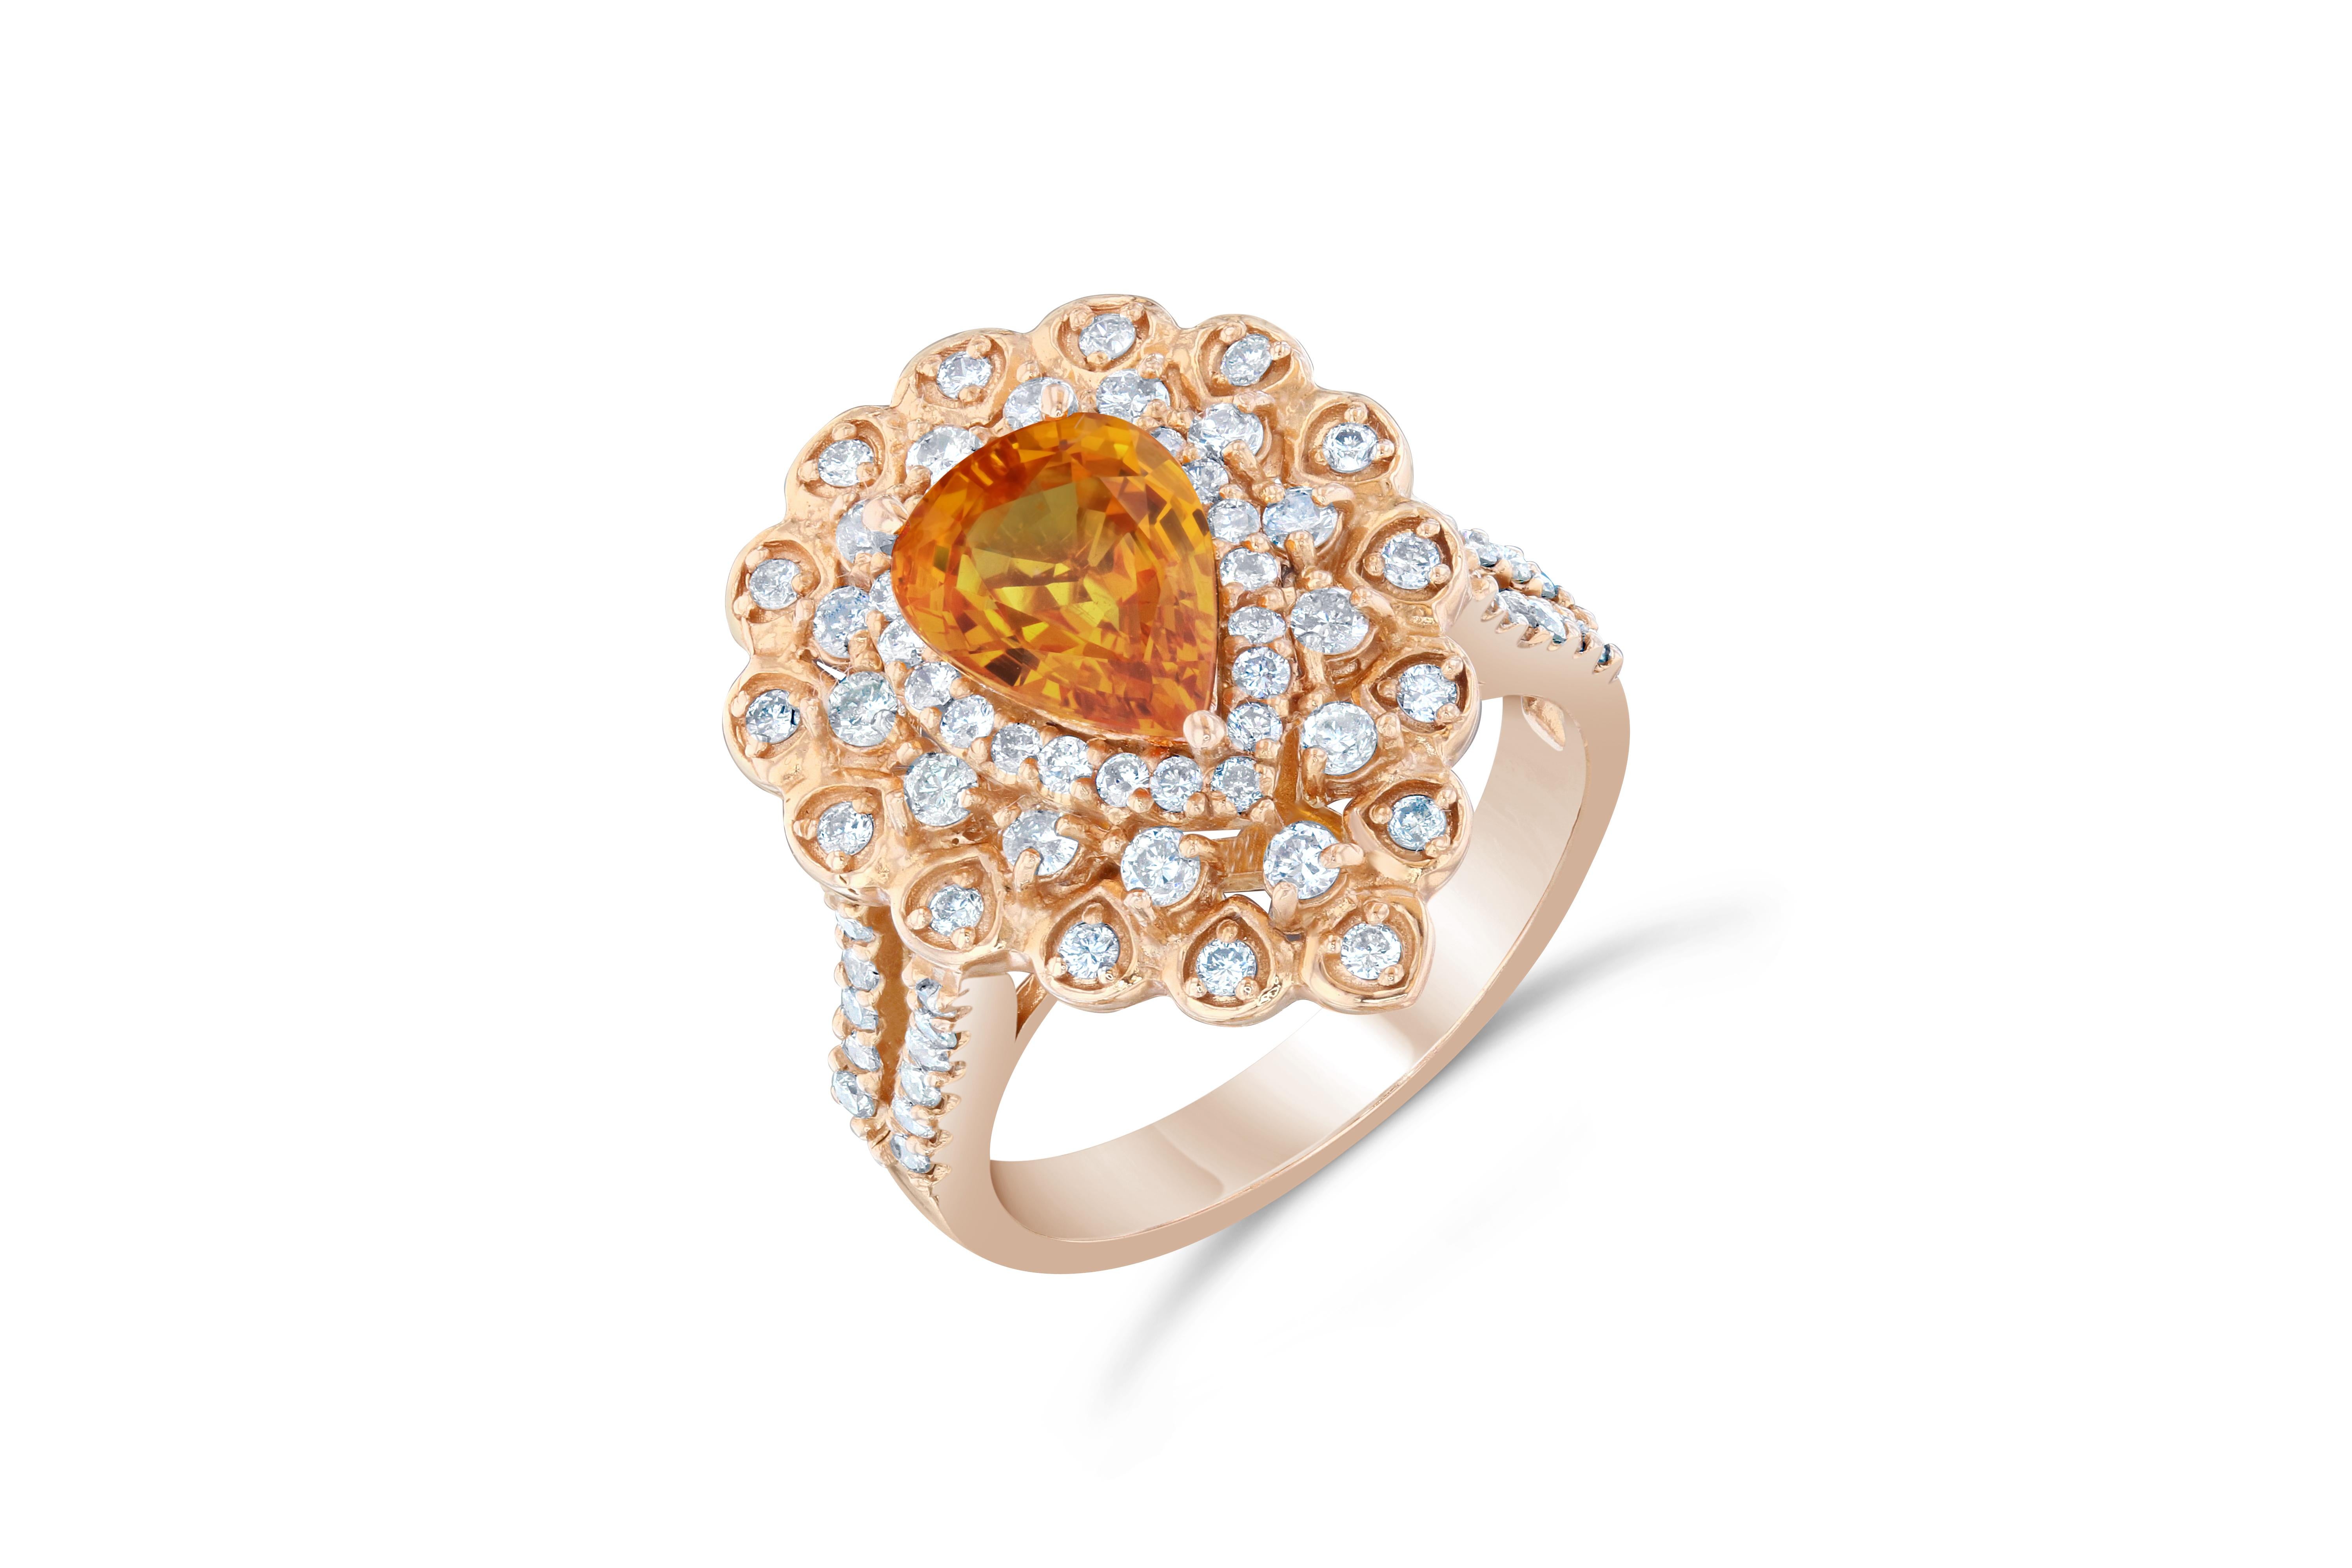 Dieser schöne Ring hat einen natürlichen orangefarbenen Saphir im Birnenschliff mit einem Gewicht von 2,14 Karat. 

Der orangefarbene Saphir ist mit 74 wunderschönen Diamanten im Rundschliff verziert, die 0,88 Karat wiegen. Die Diamanten haben eine